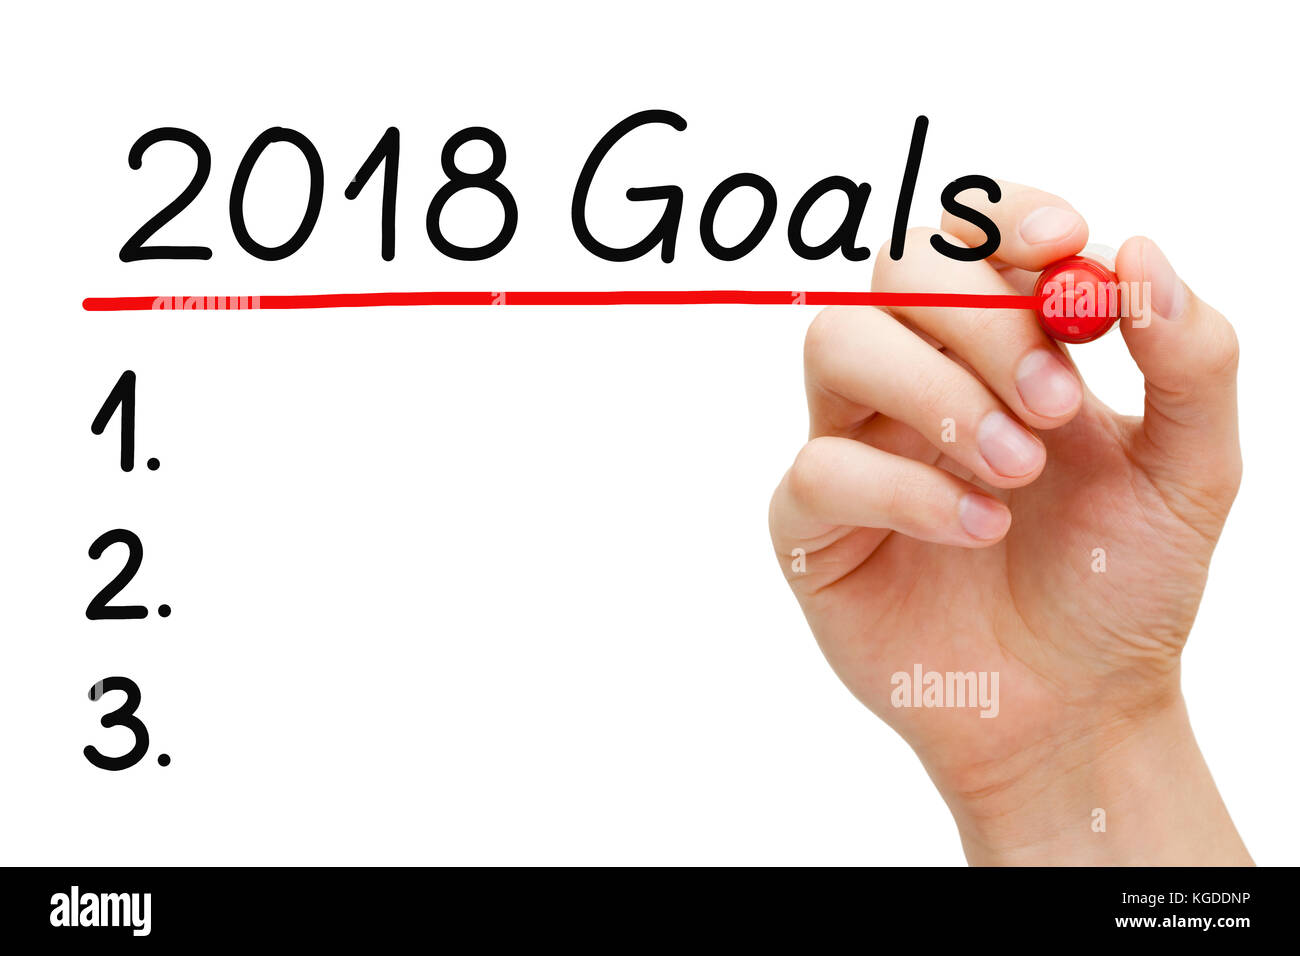 Vuoto elenco degli obiettivi per l'anno 2018 isolato su bianco. mano sottolineando 2018 obiettivi con contrassegno rosso sulla cancellazione trasparente stampato. Foto Stock